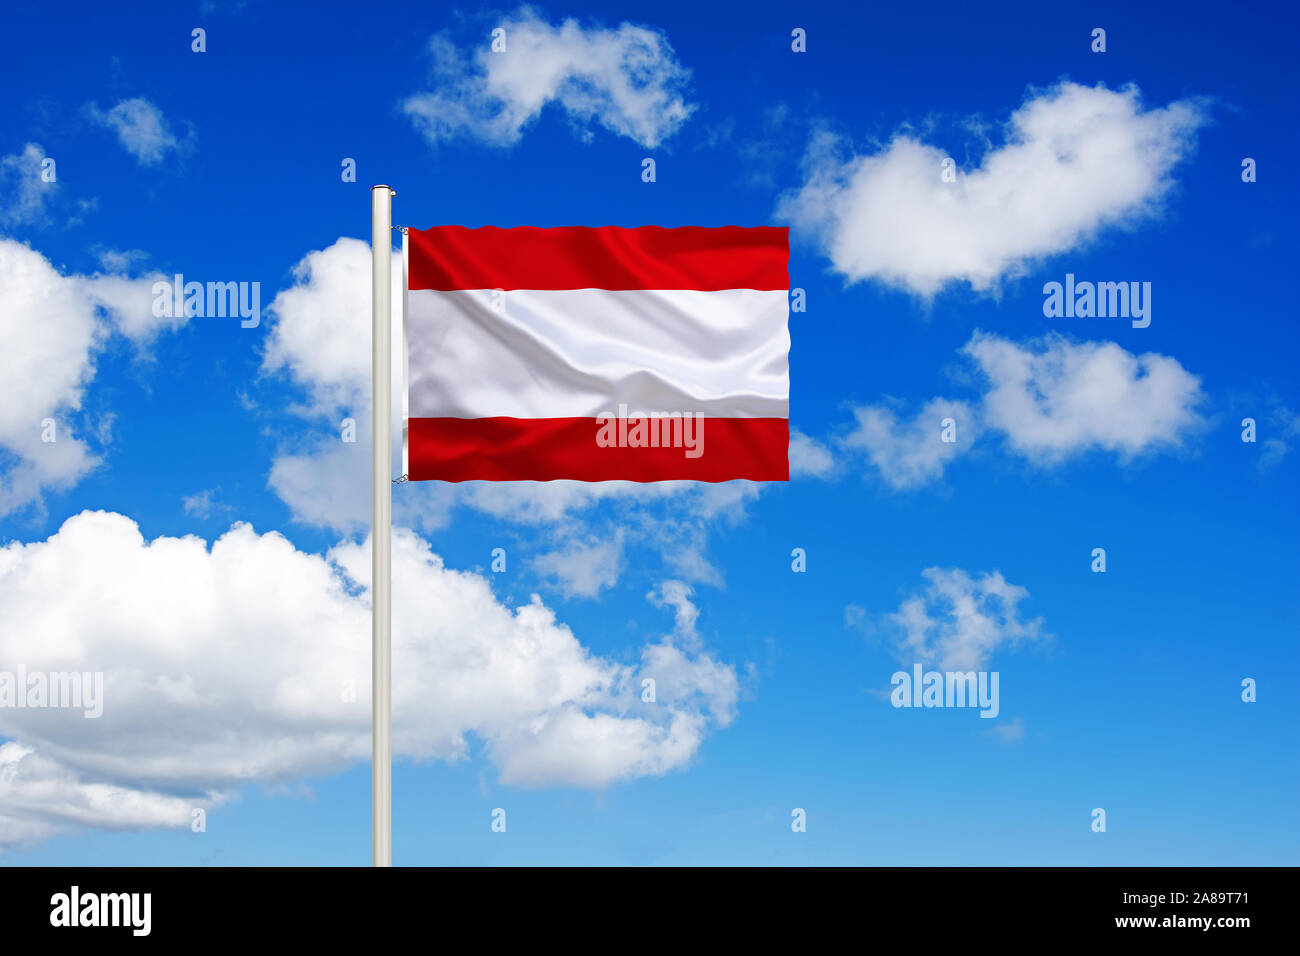 Französich-Polynesien, Tahiti, Südsee, Nationalfahne Nationalflagge,,, Flaggenmast Fahne Flagge, Cumulus, Wolken vor blauen Himmel, Banque D'Images